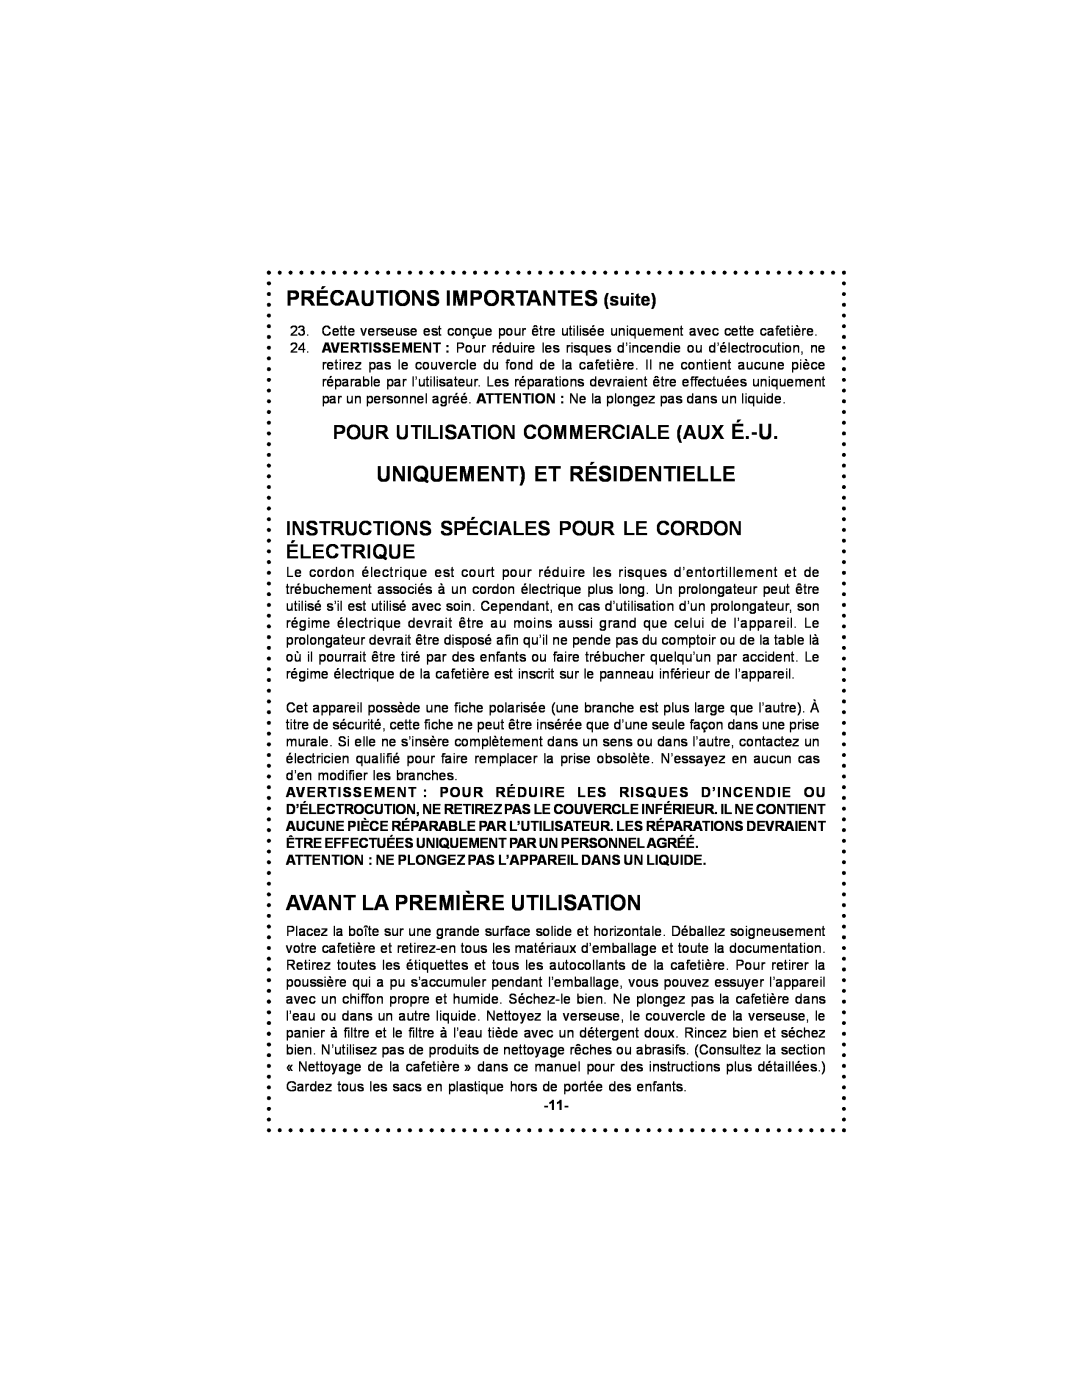 DeLonghi DC500 instruction manual PRÉCAUTIONS IMPORTANTES suite, Uniquement Et Résidentielle, Avant La Première Utilisation 